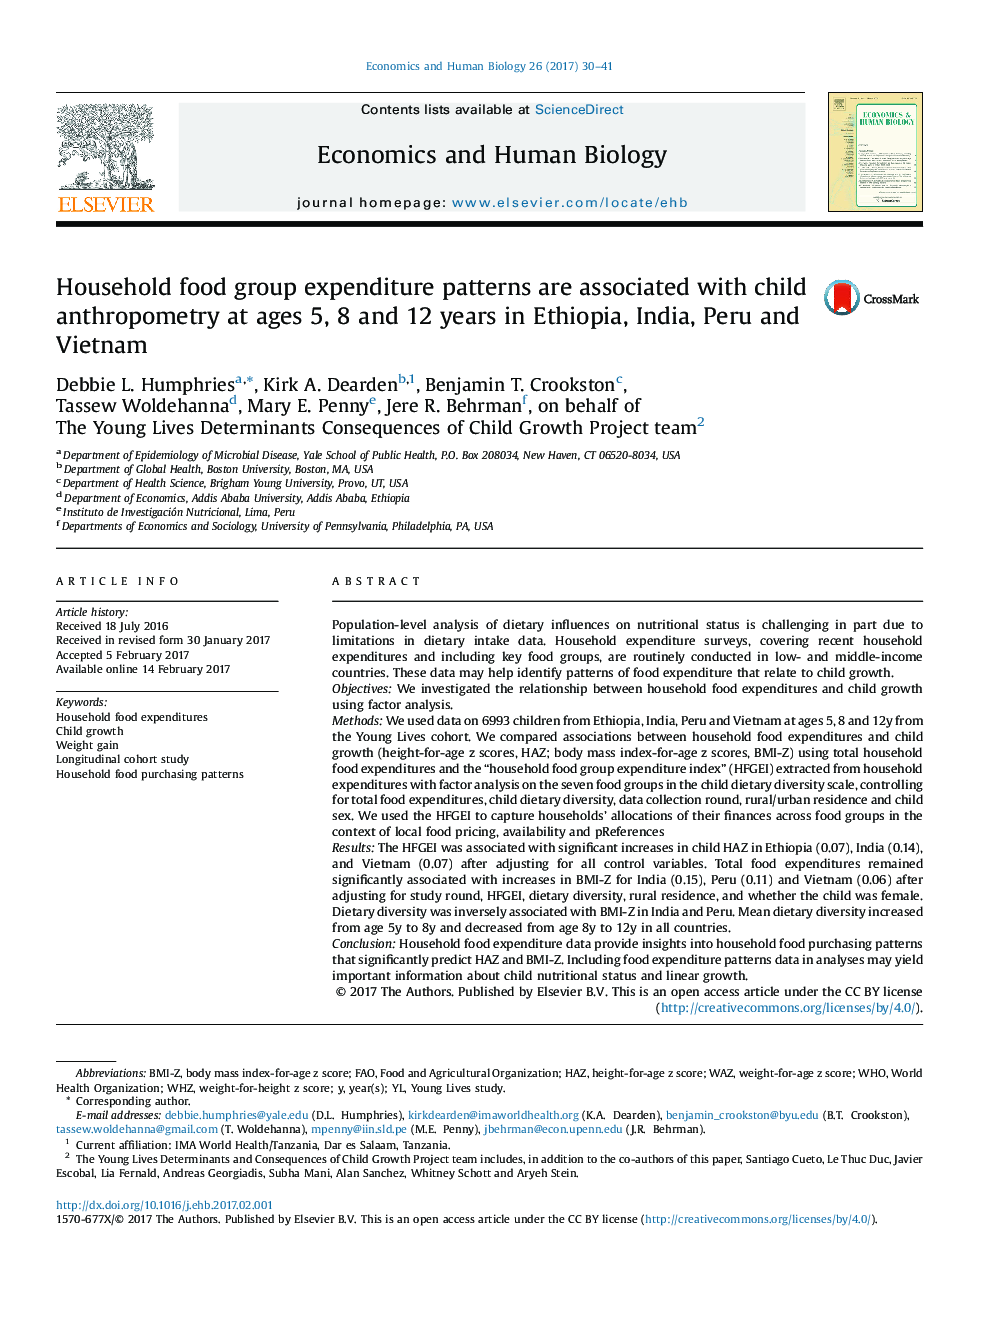 الگوهای هزینه های گروه غذای خانگی با آنتروپومتری کودک در سن 5، 8 و 12 سال در اتیوپی، هند، پرو و ​​ویتنام همراه است 